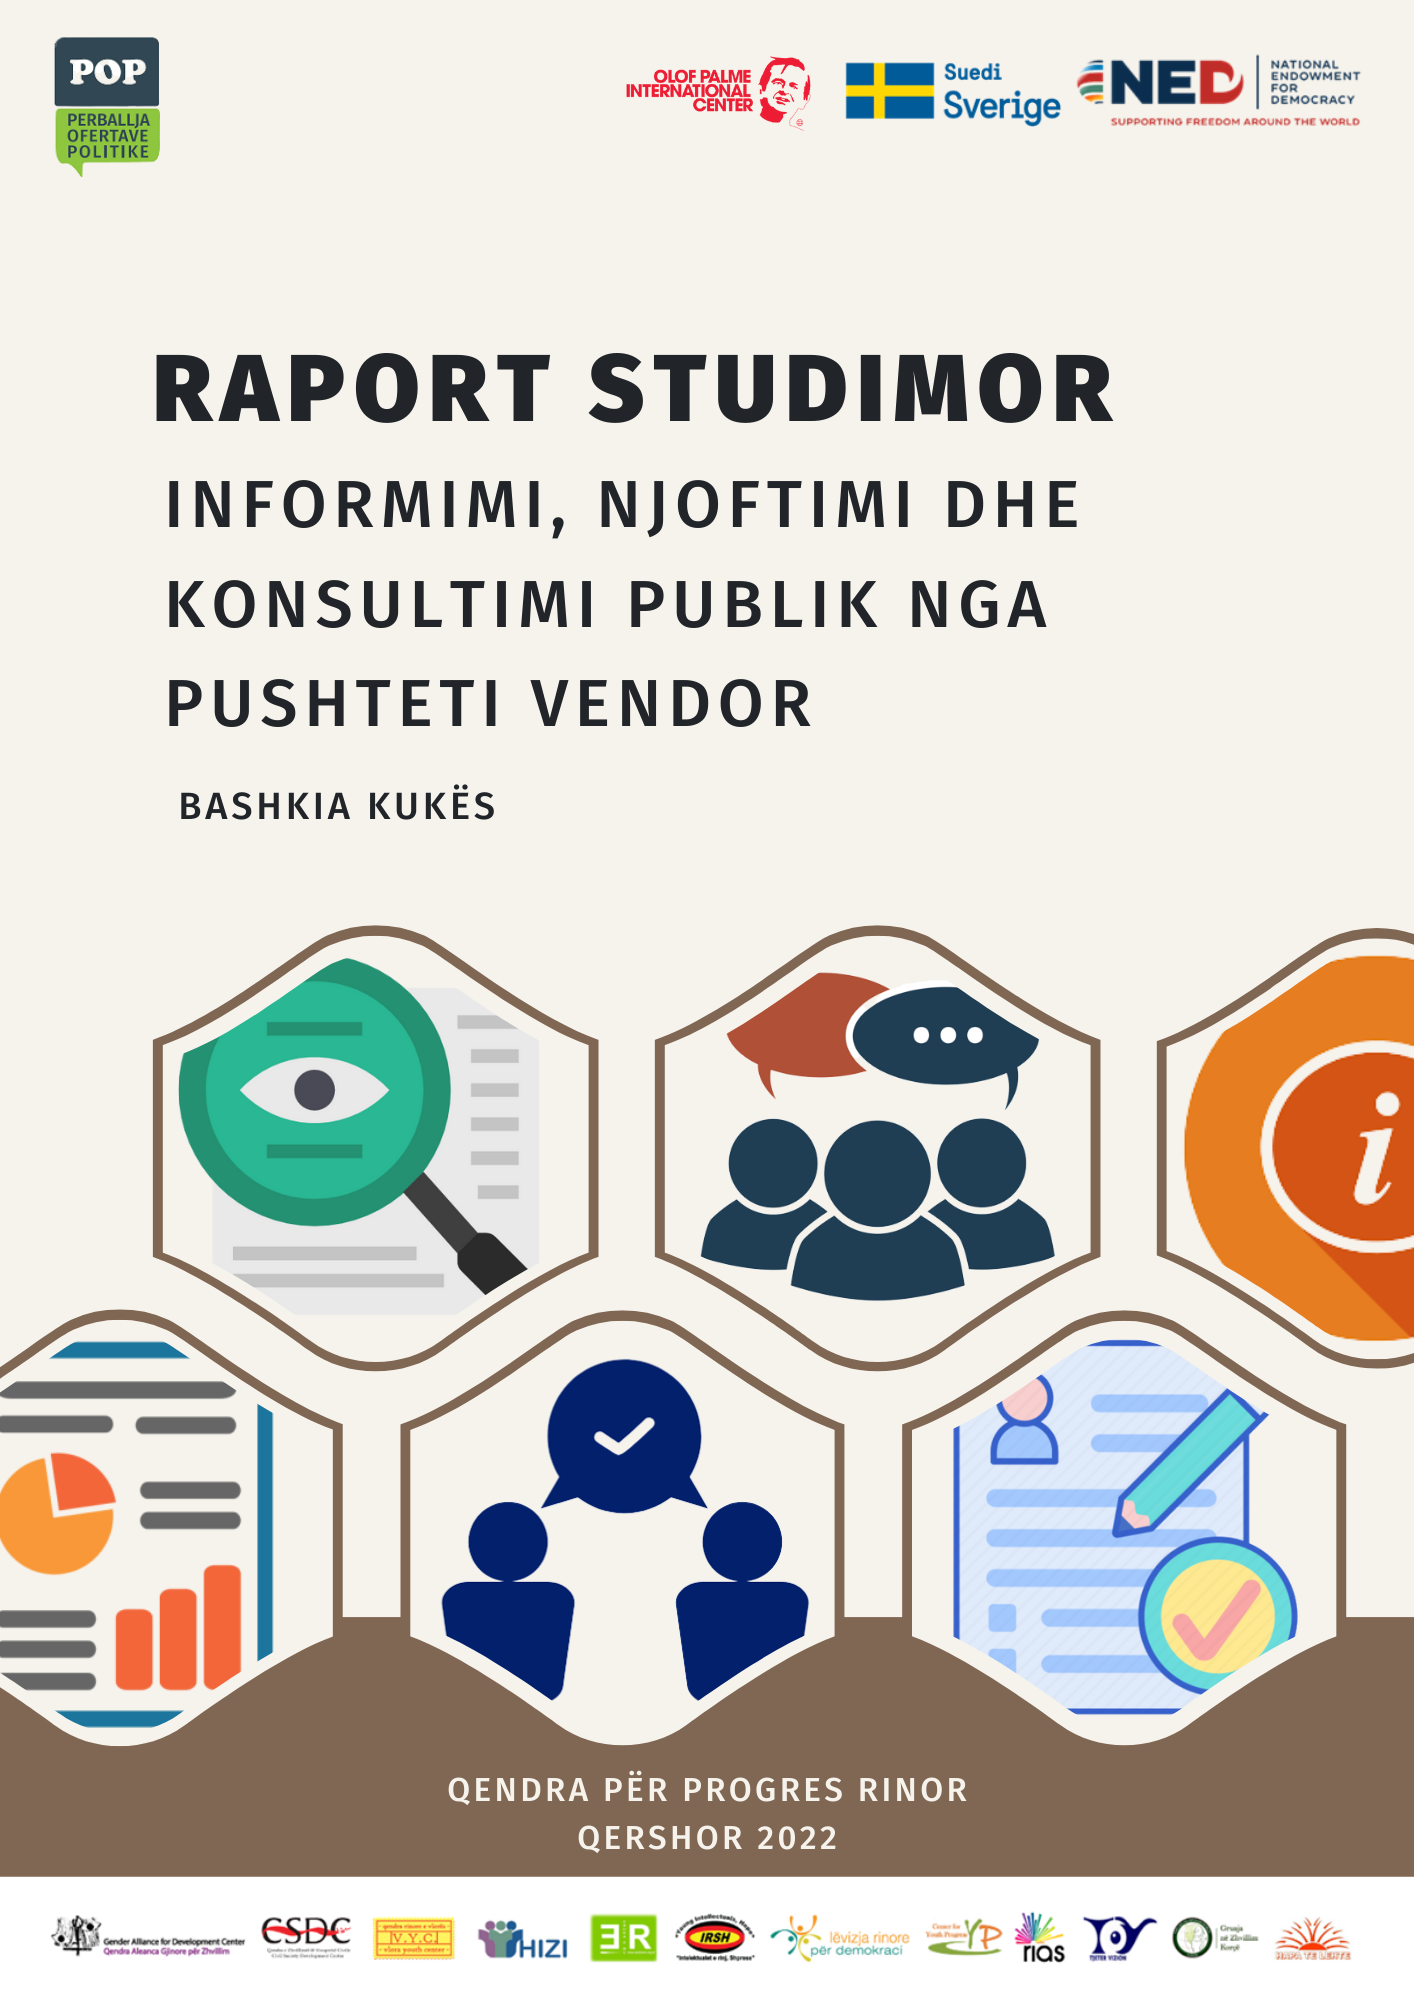 Raporti Studimor “Informimi, Njoftimi dhe Konsultimi Publik” – Bashkia Kukës